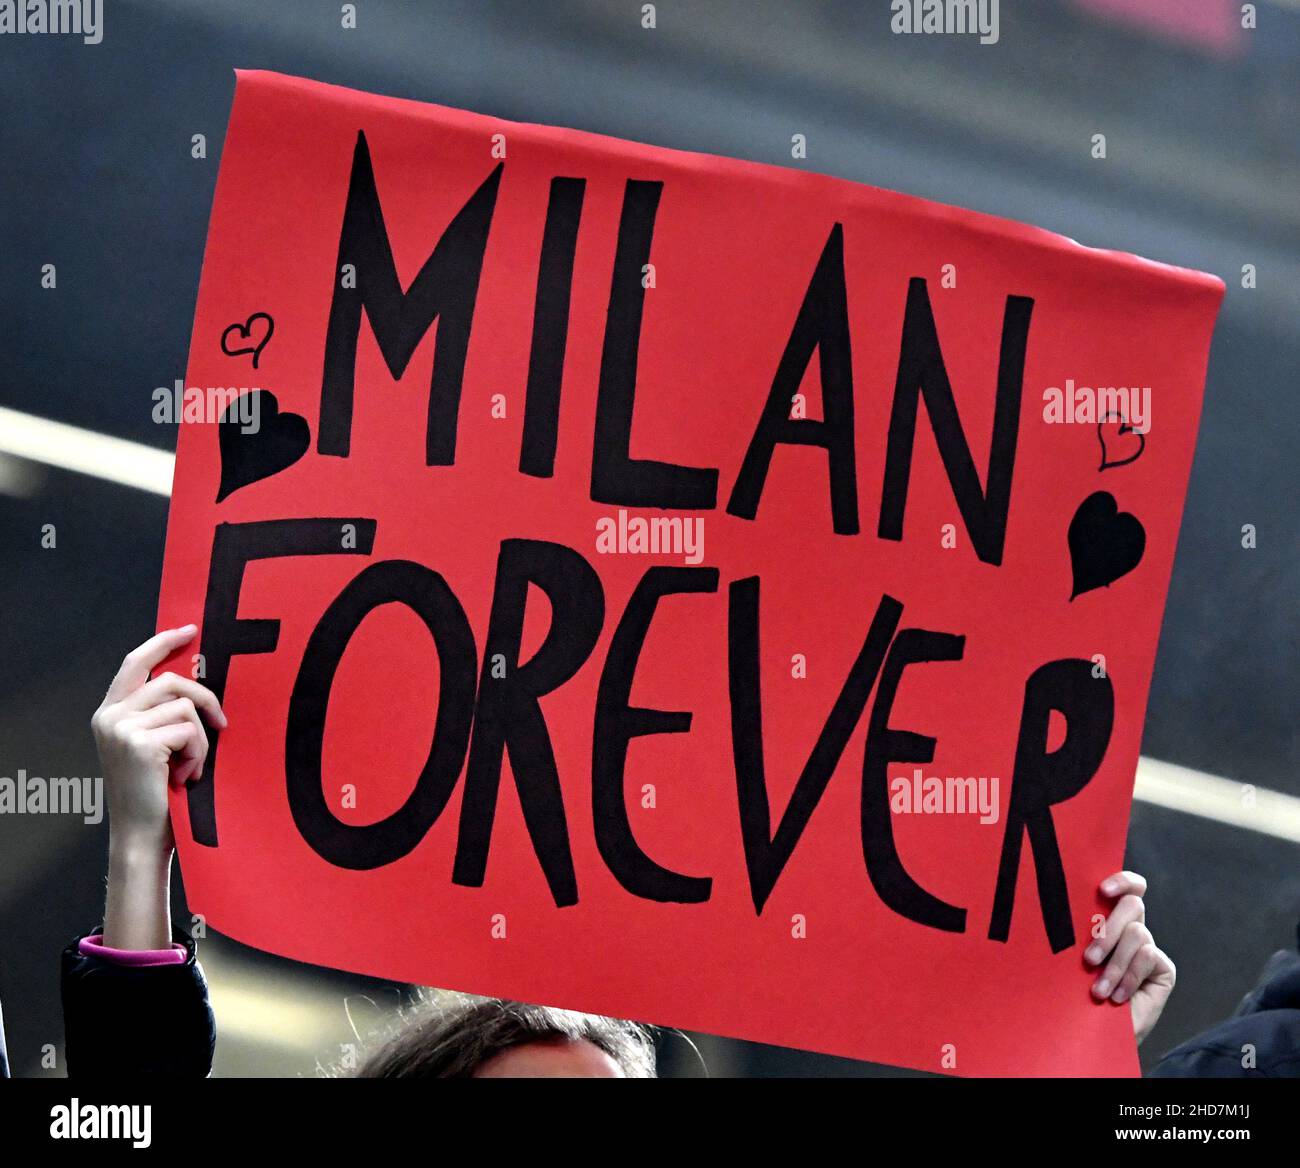 Fan del AC Milan en el estadio de San Siro, en Milán. Foto de stock